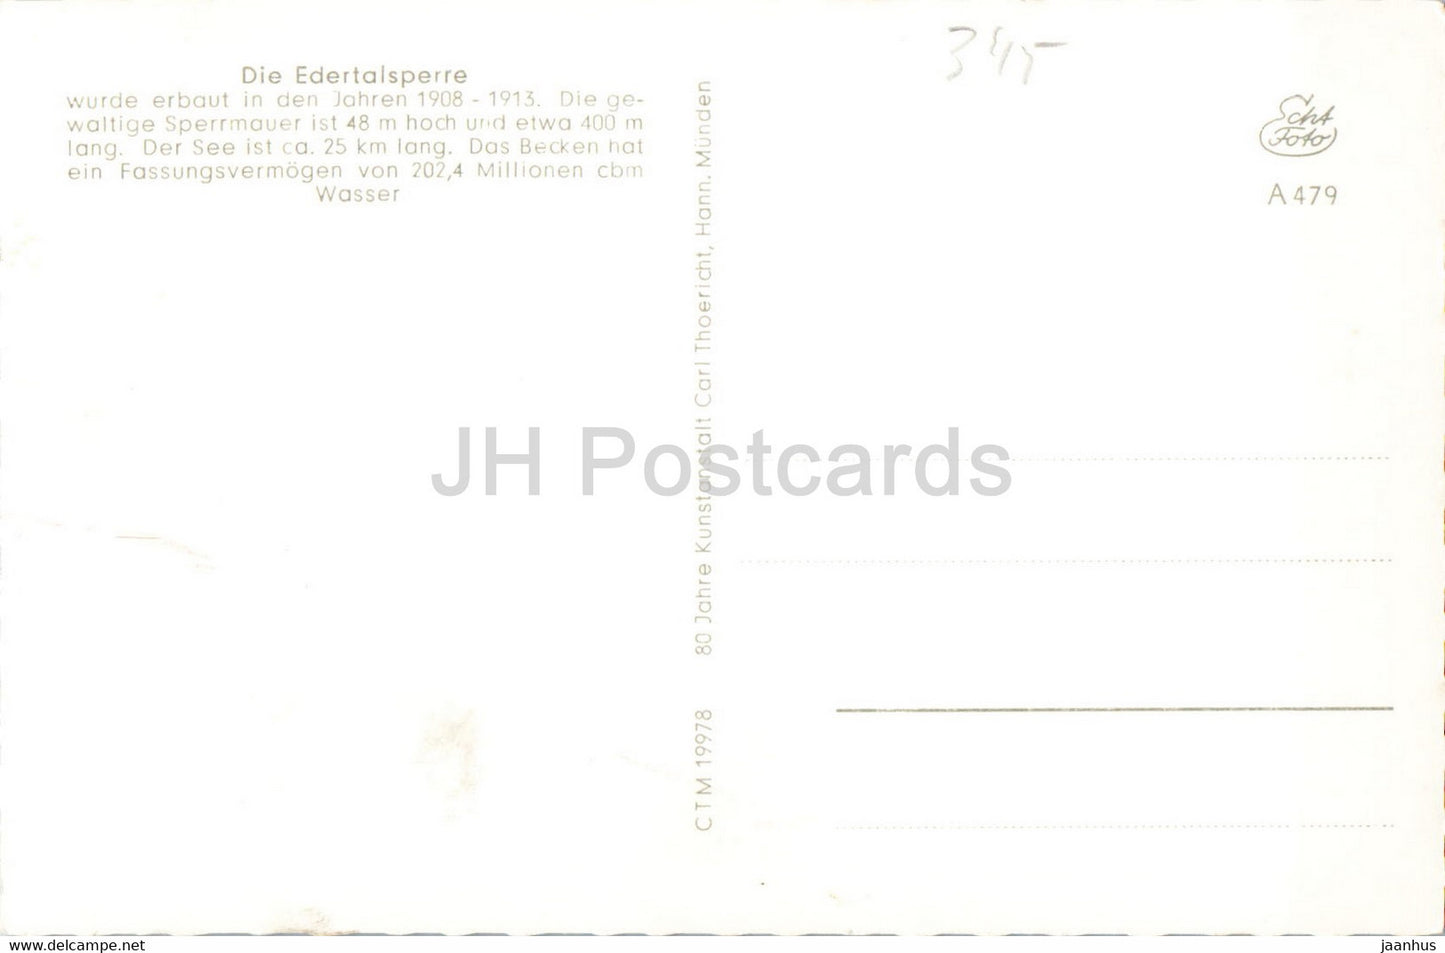 Die Edertalsperre - Edersee - Sperrmauer - old postcard - Germany - unused